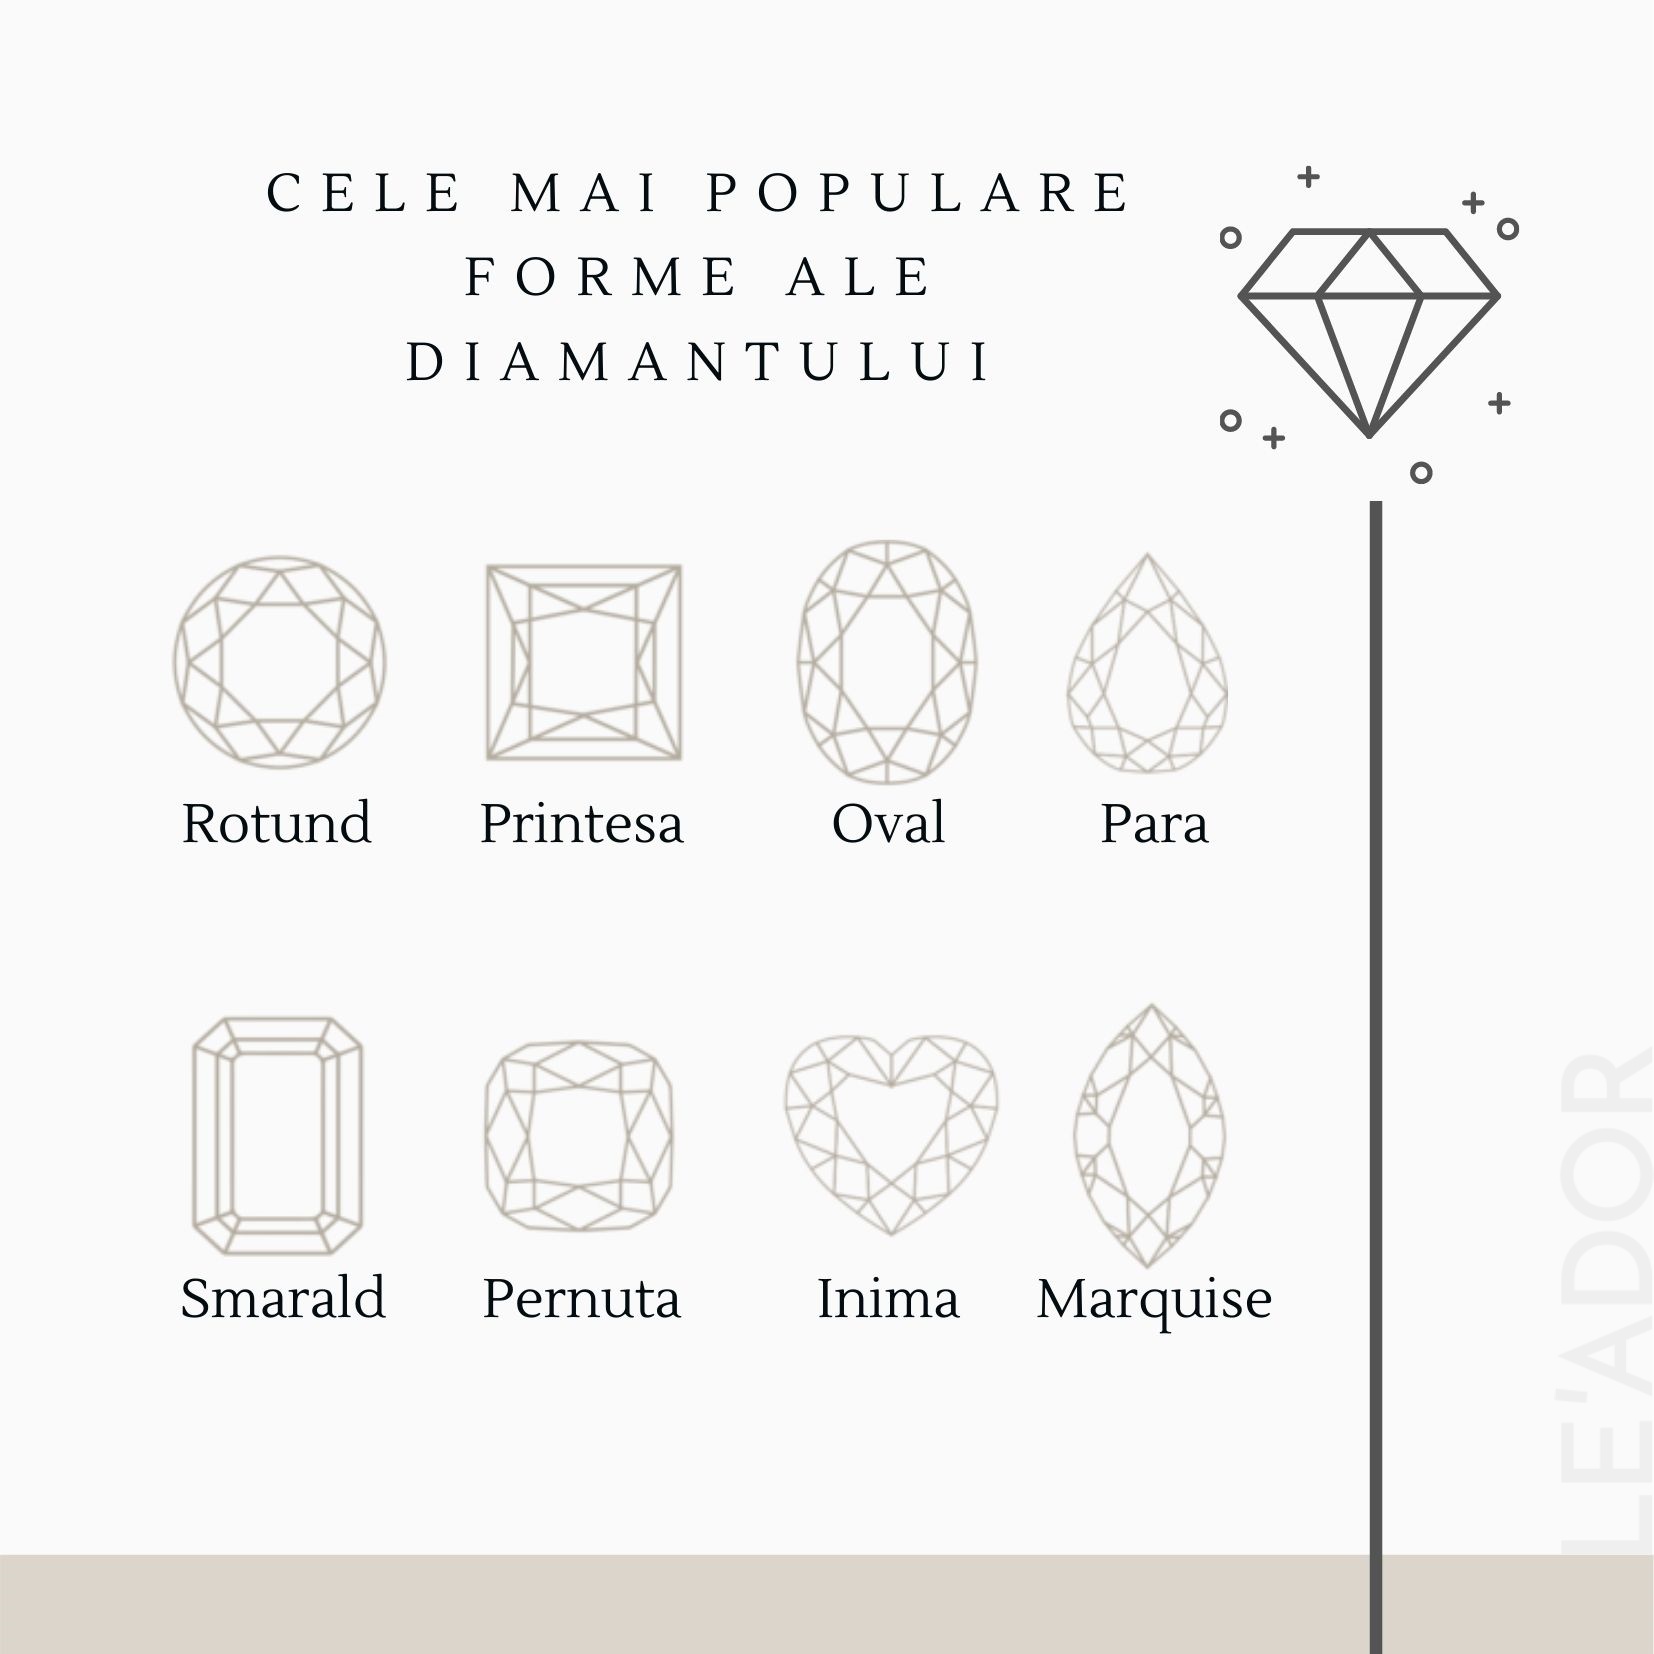 Forme ale diamantului